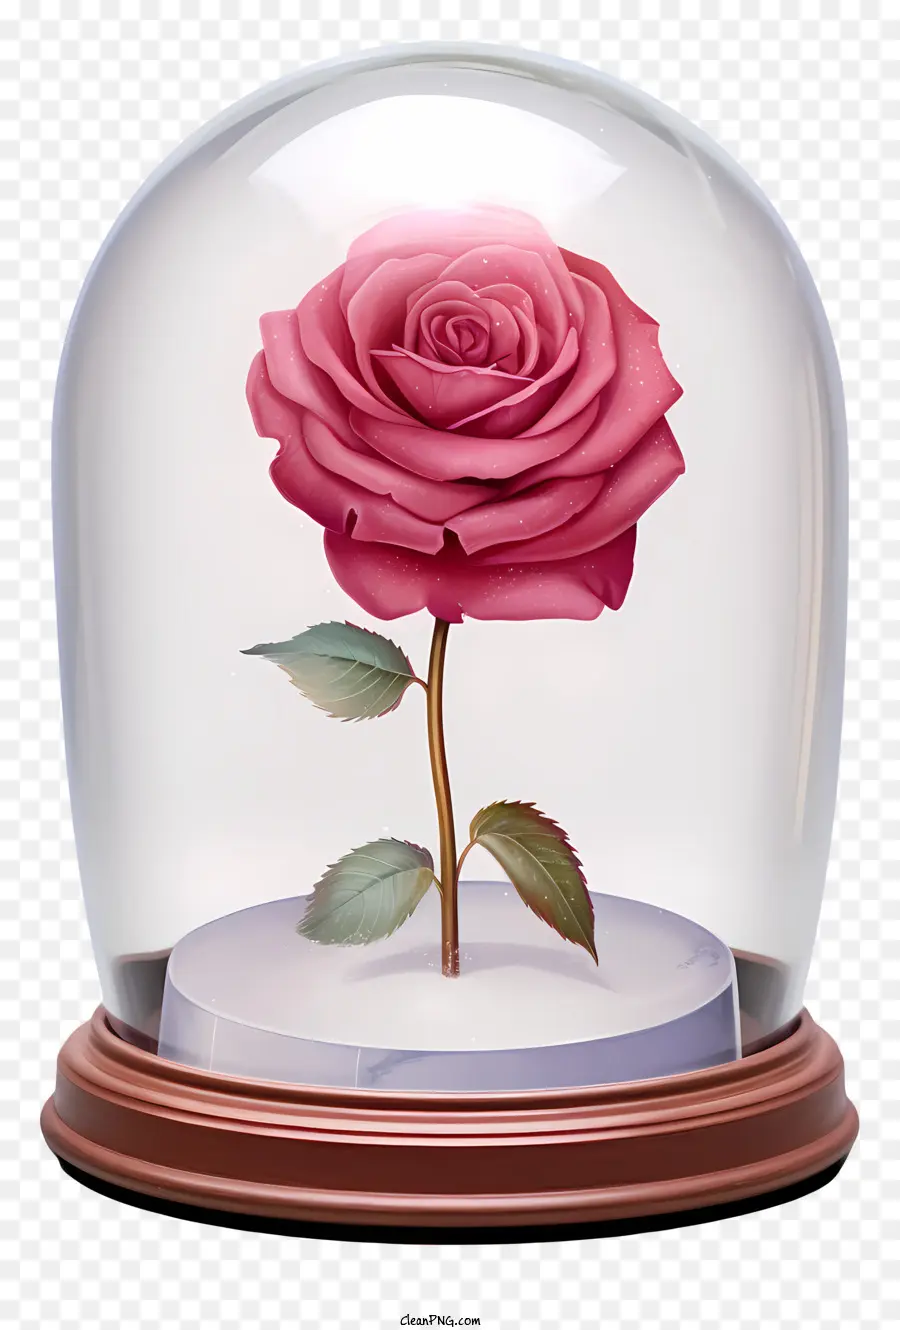 bông hồng đỏ - Hoa hồng đỏ trong vòm thủy tinh, tượng trưng cho tình yêu